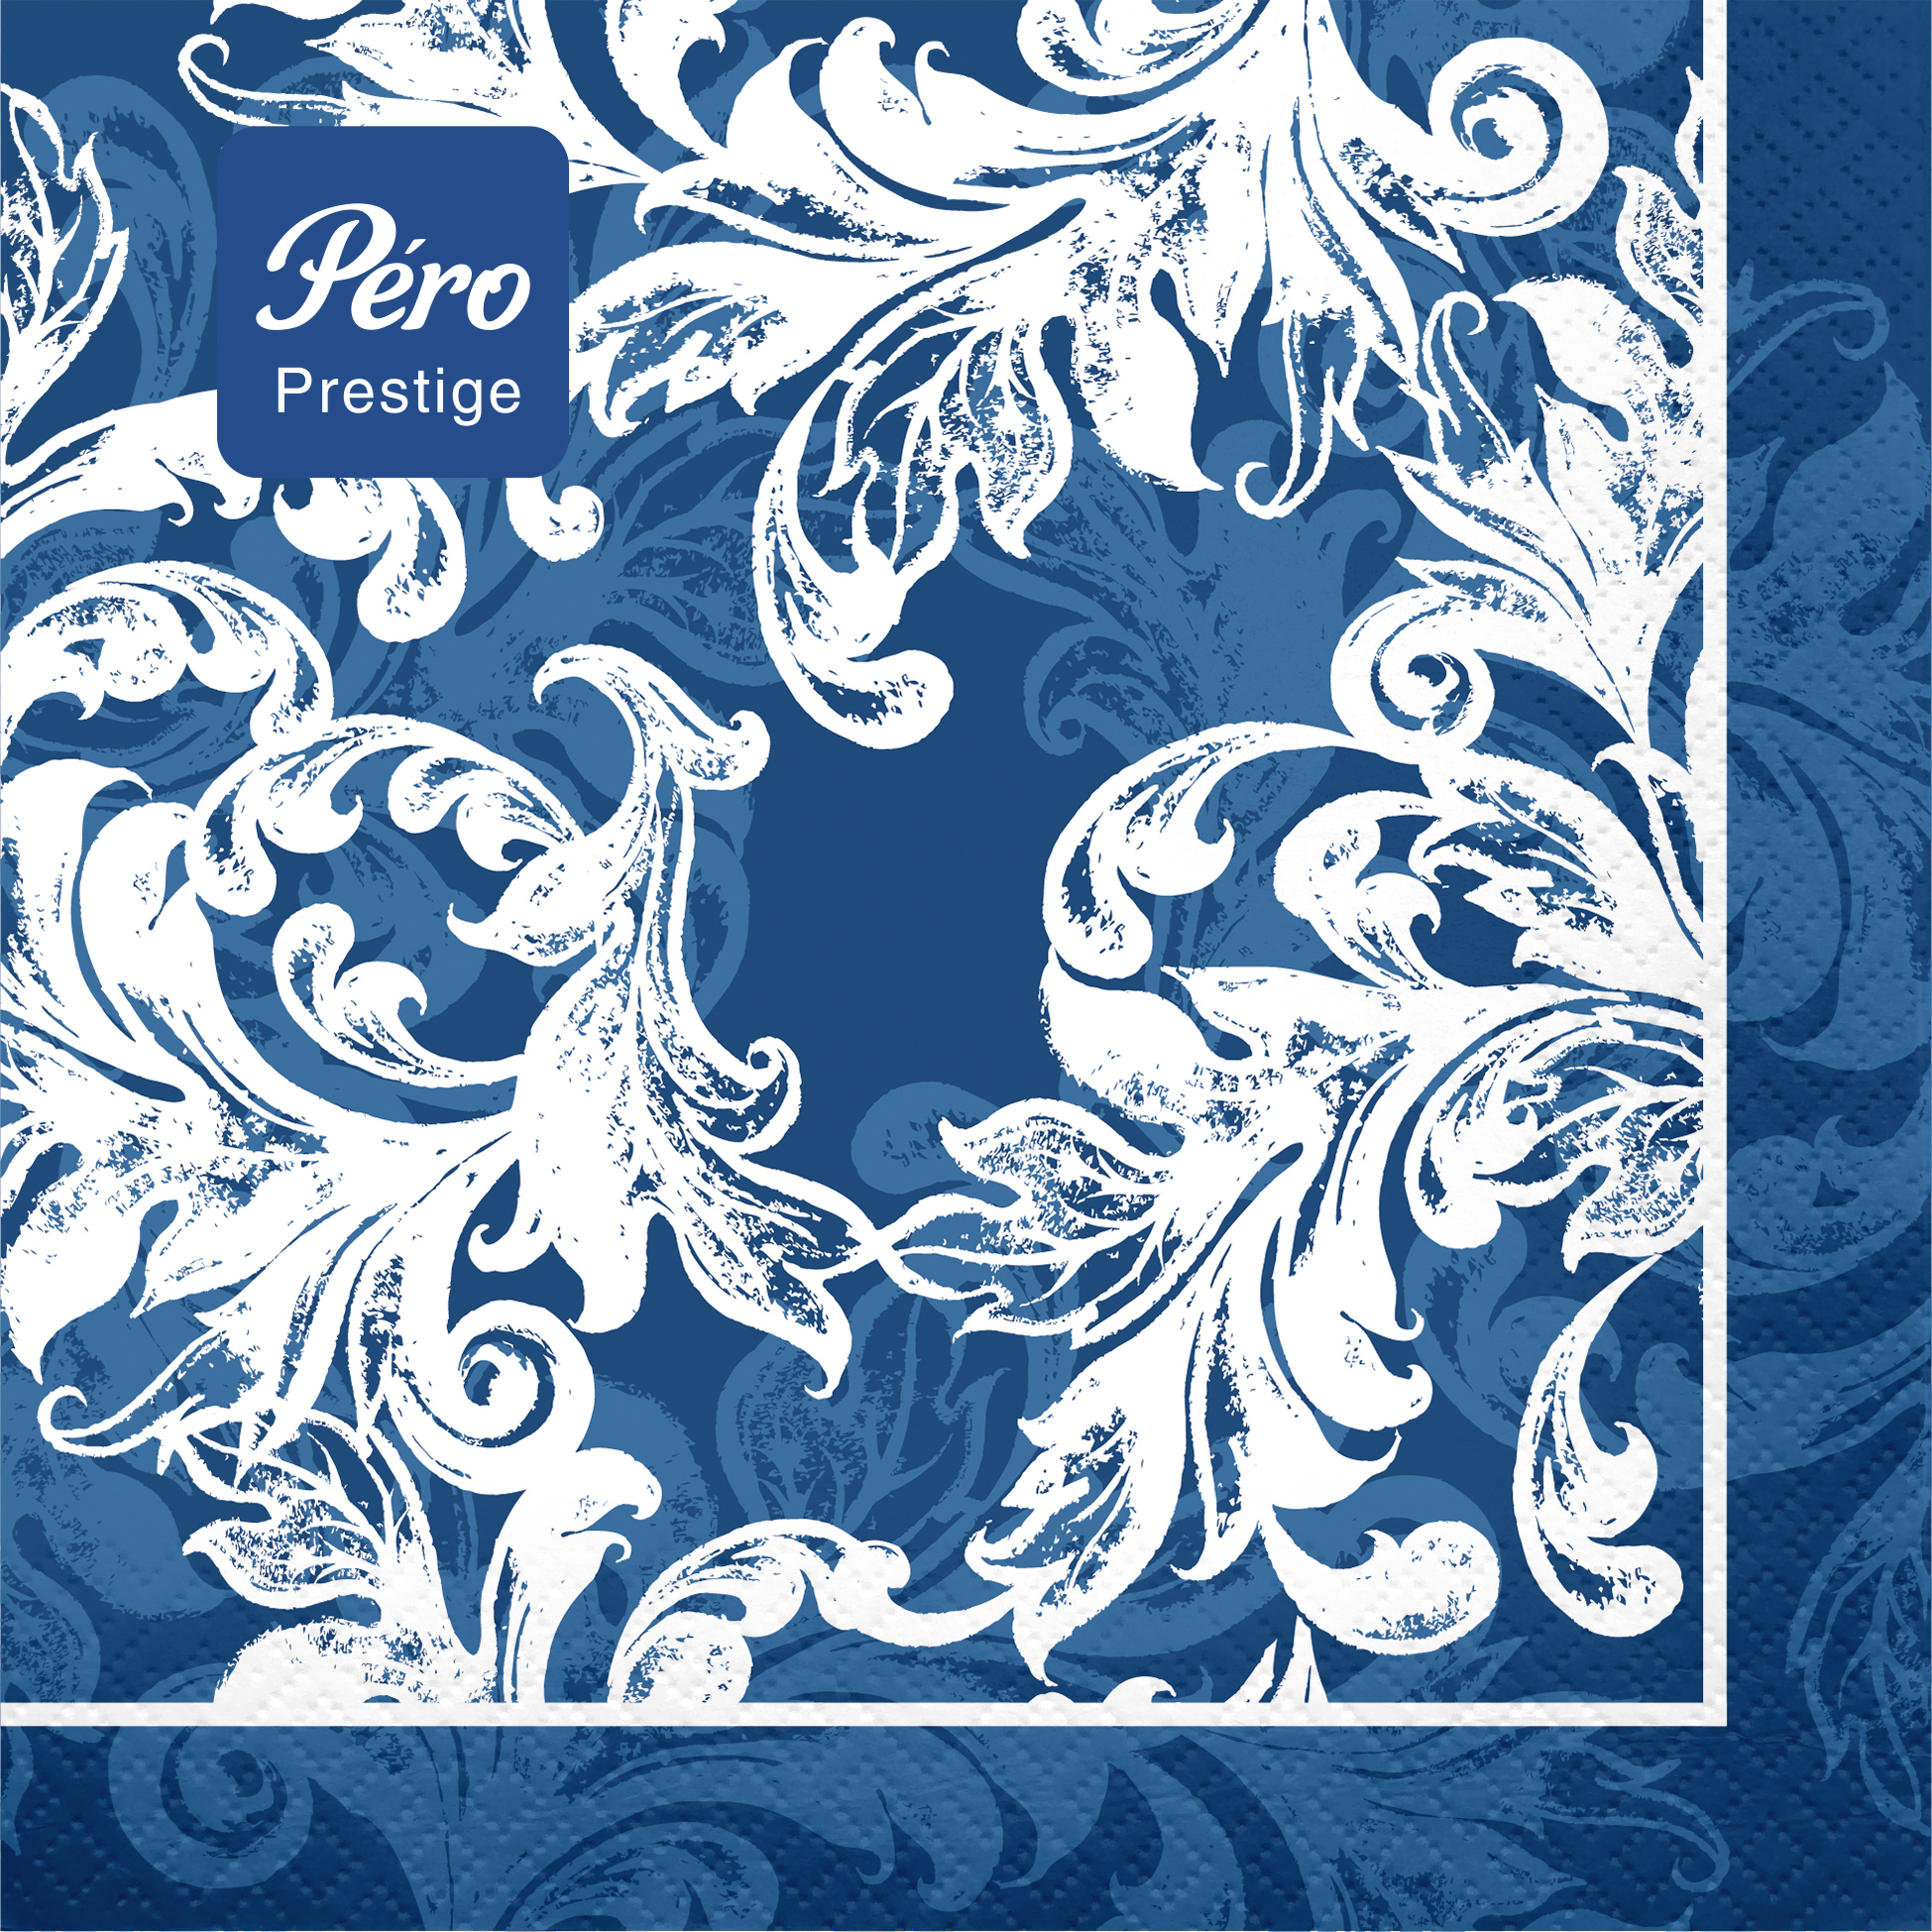 Салфетки бумажные Pero Prestige 3-слойные Муар синий 33х33см 20шт салфетки бумажные лилия 33х33см голубой 2сл 20шт